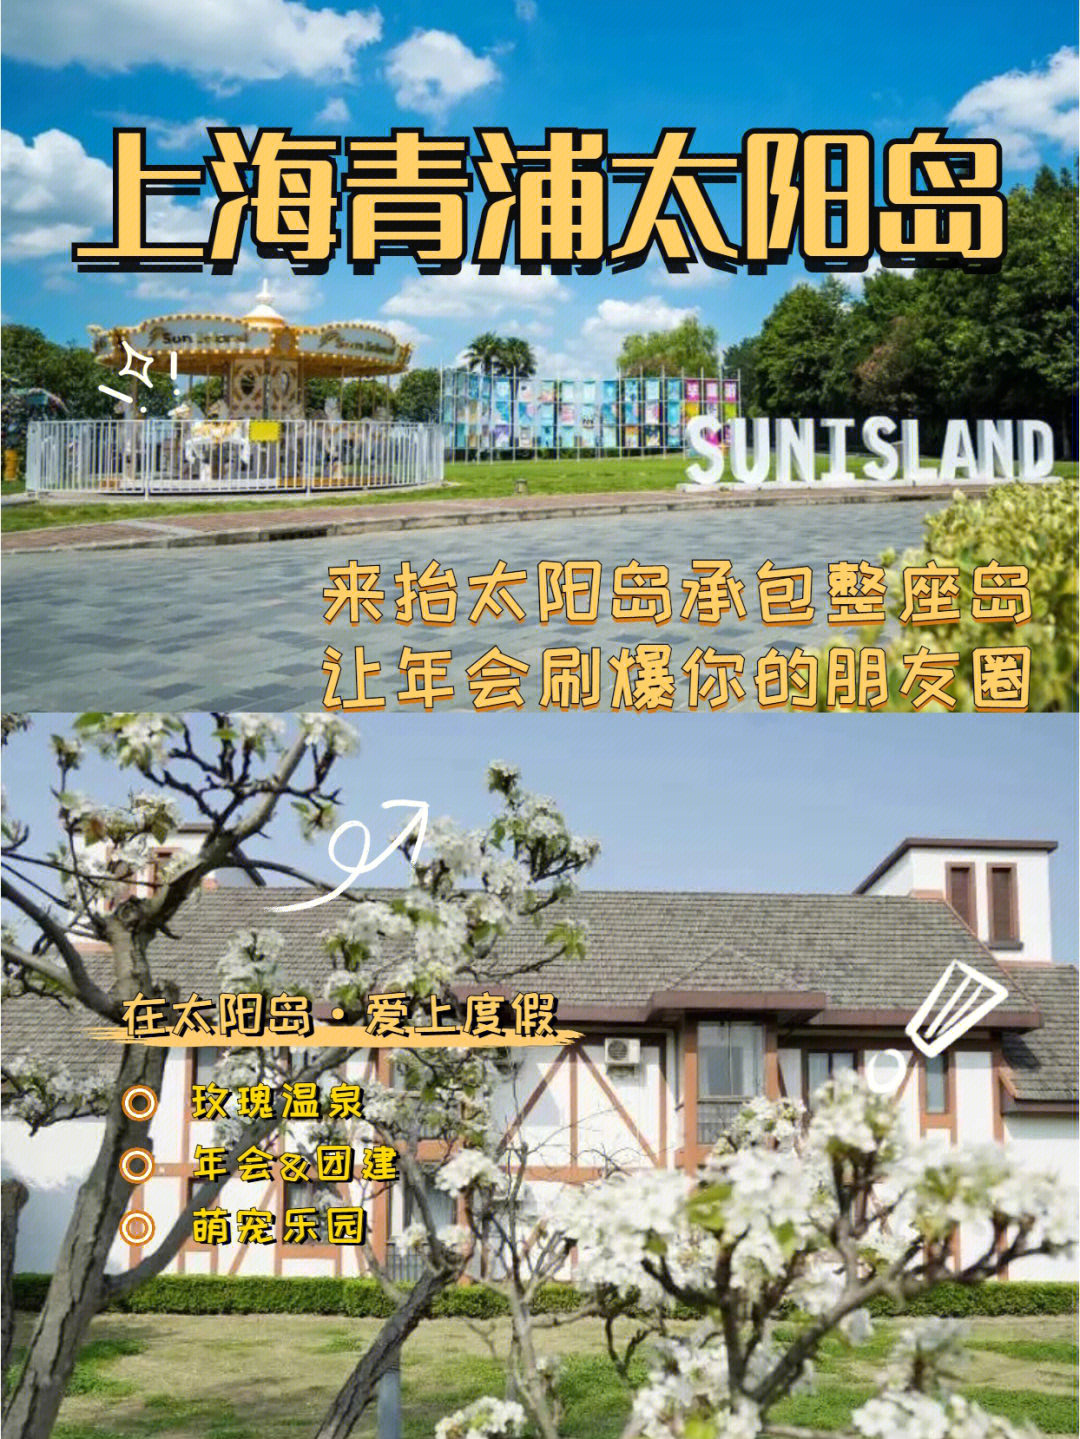 青浦太阳岛度假村电话图片